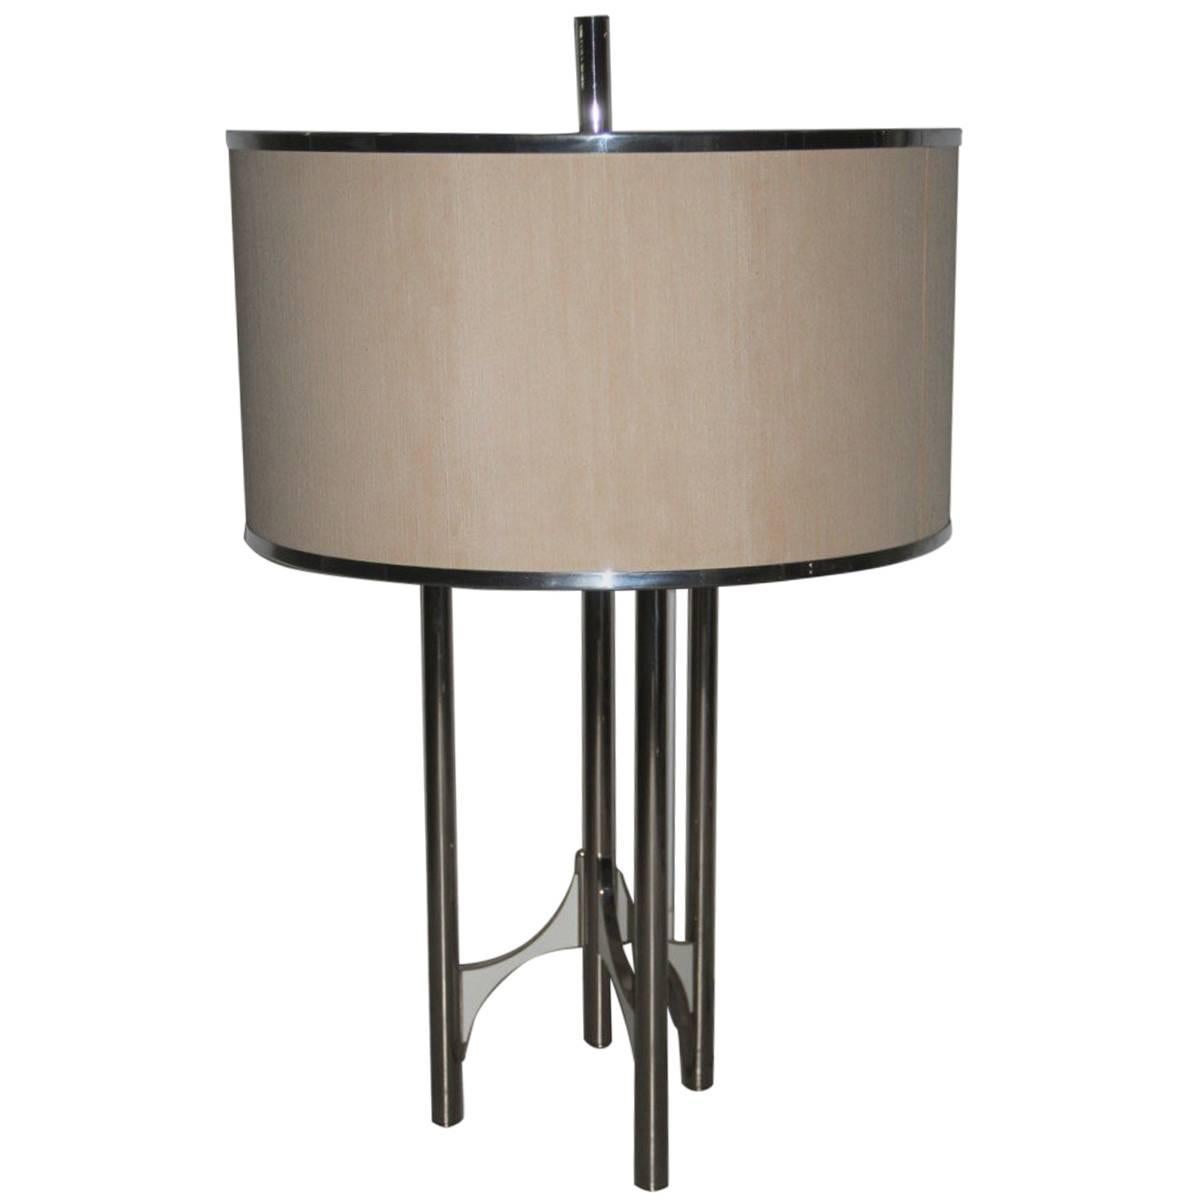 Minimal Chic Italian Design Table Lamp Sciolari Design 1970